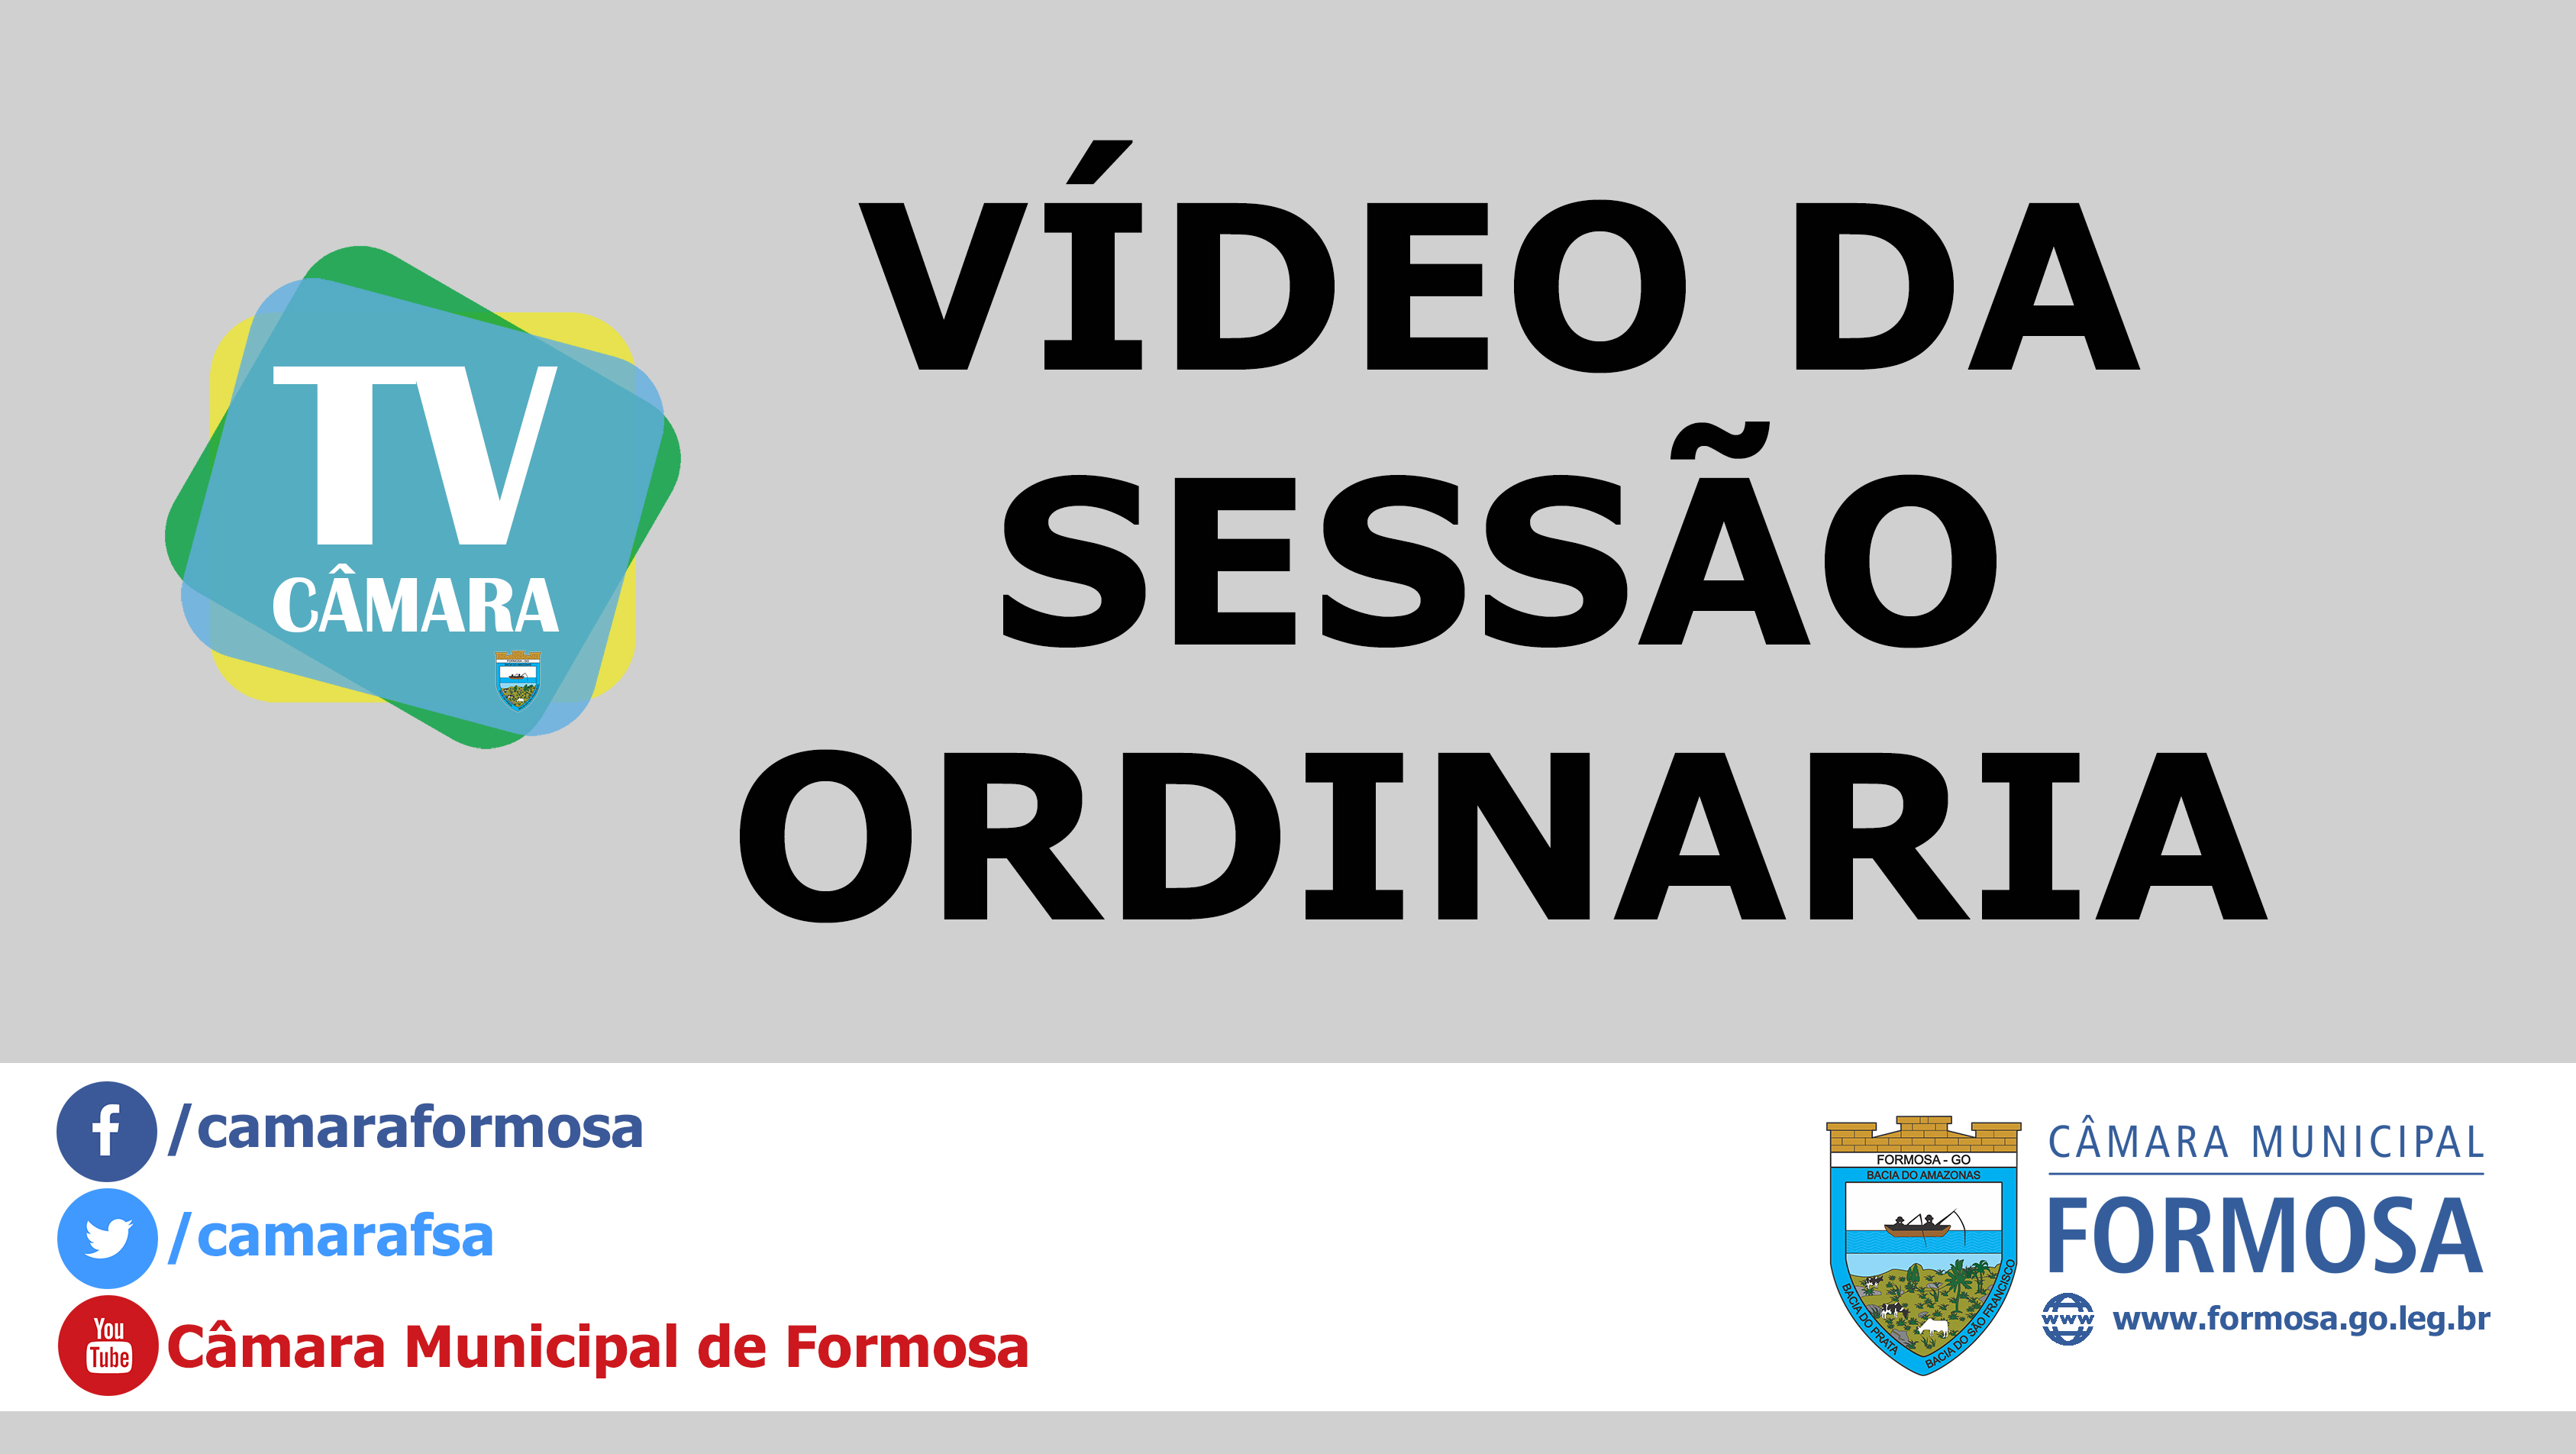 Vídeo das Sessões Ordinária e Extraordinárias do dia 11/09/18